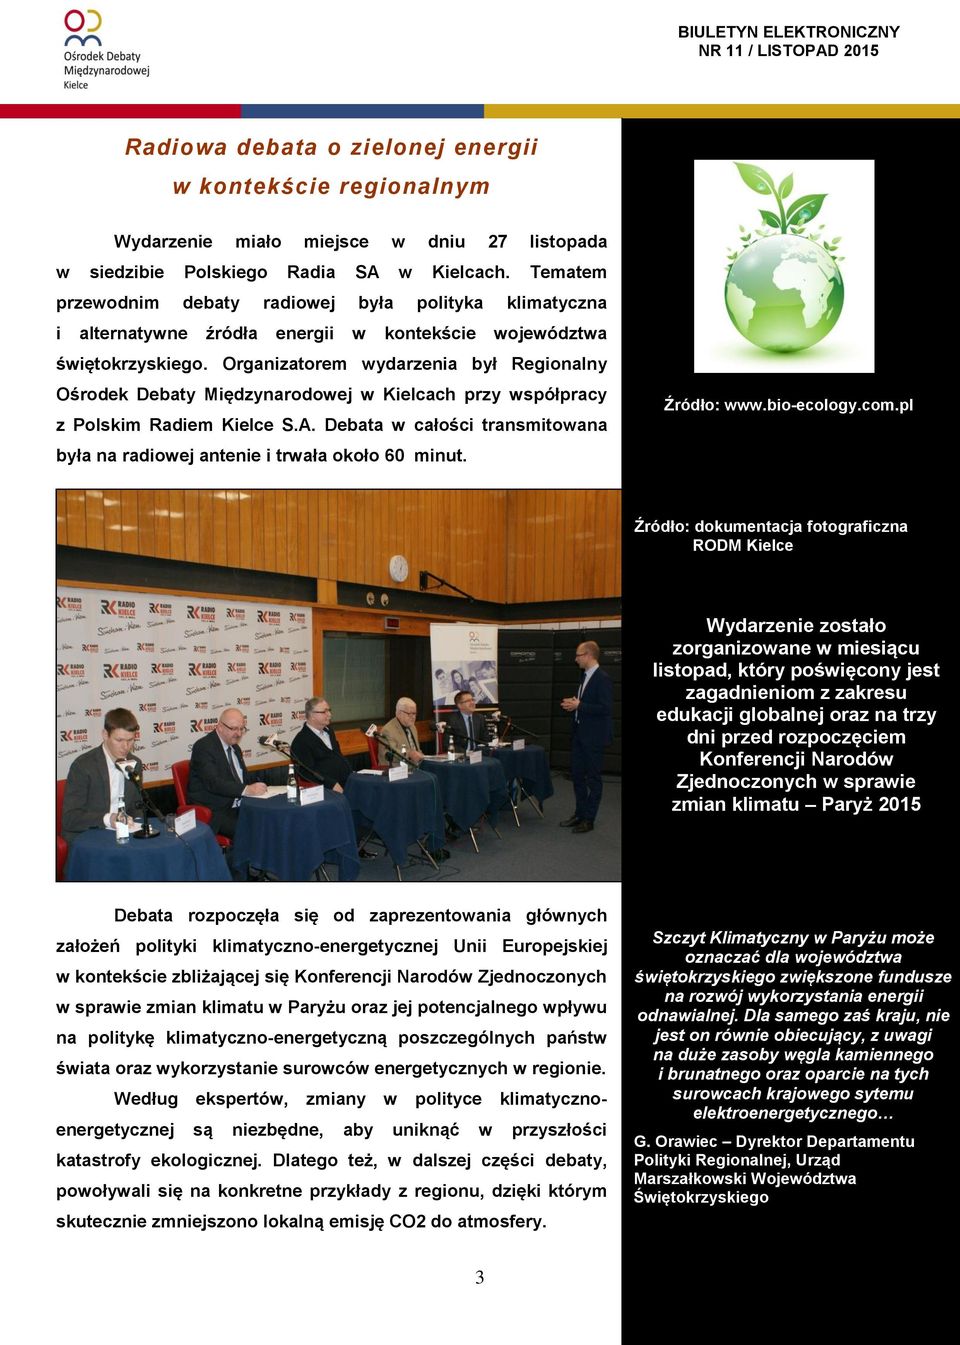 Organizatorem wydarzenia był Regionalny Ośrodek Debaty Międzynarodowej w Kielcach przy współpracy z Polskim Radiem Kielce S.A.